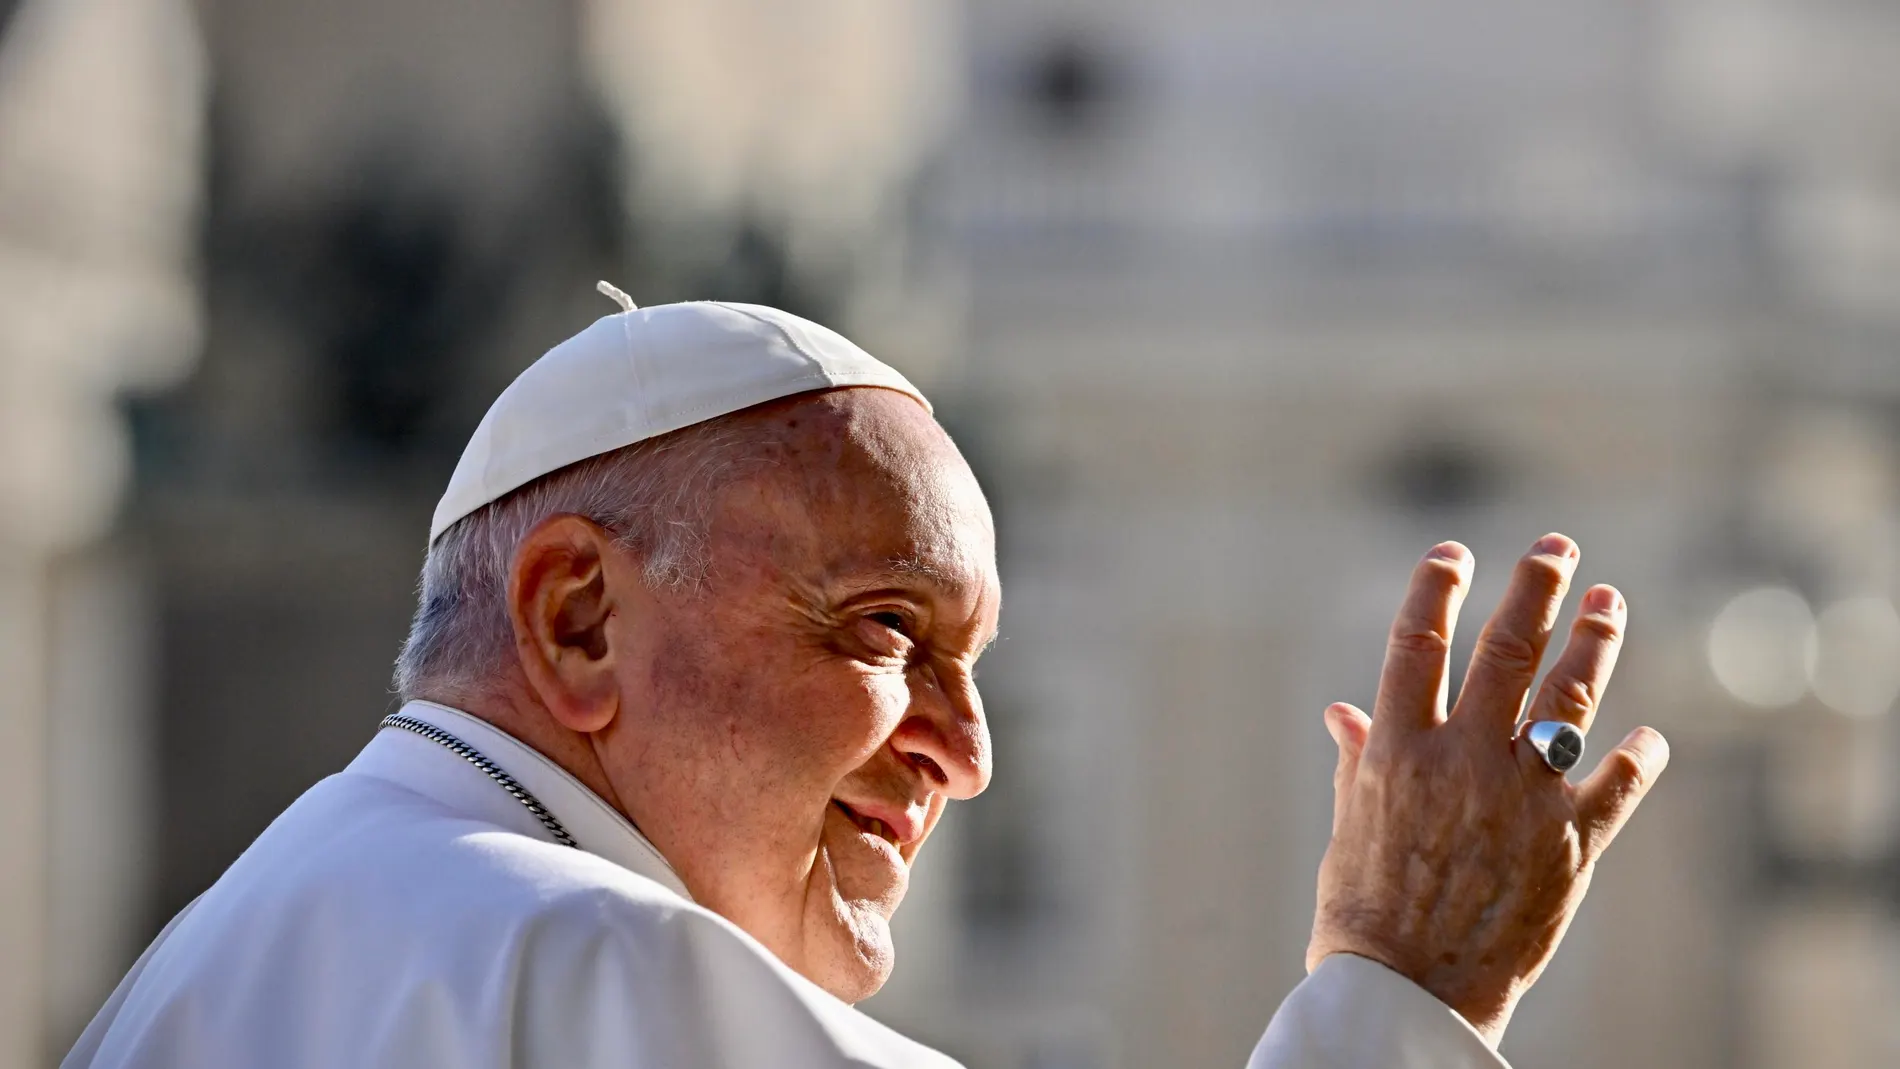 El Papa Francisco está abanderando una de las reformas más ambiciosas de la Iglesia